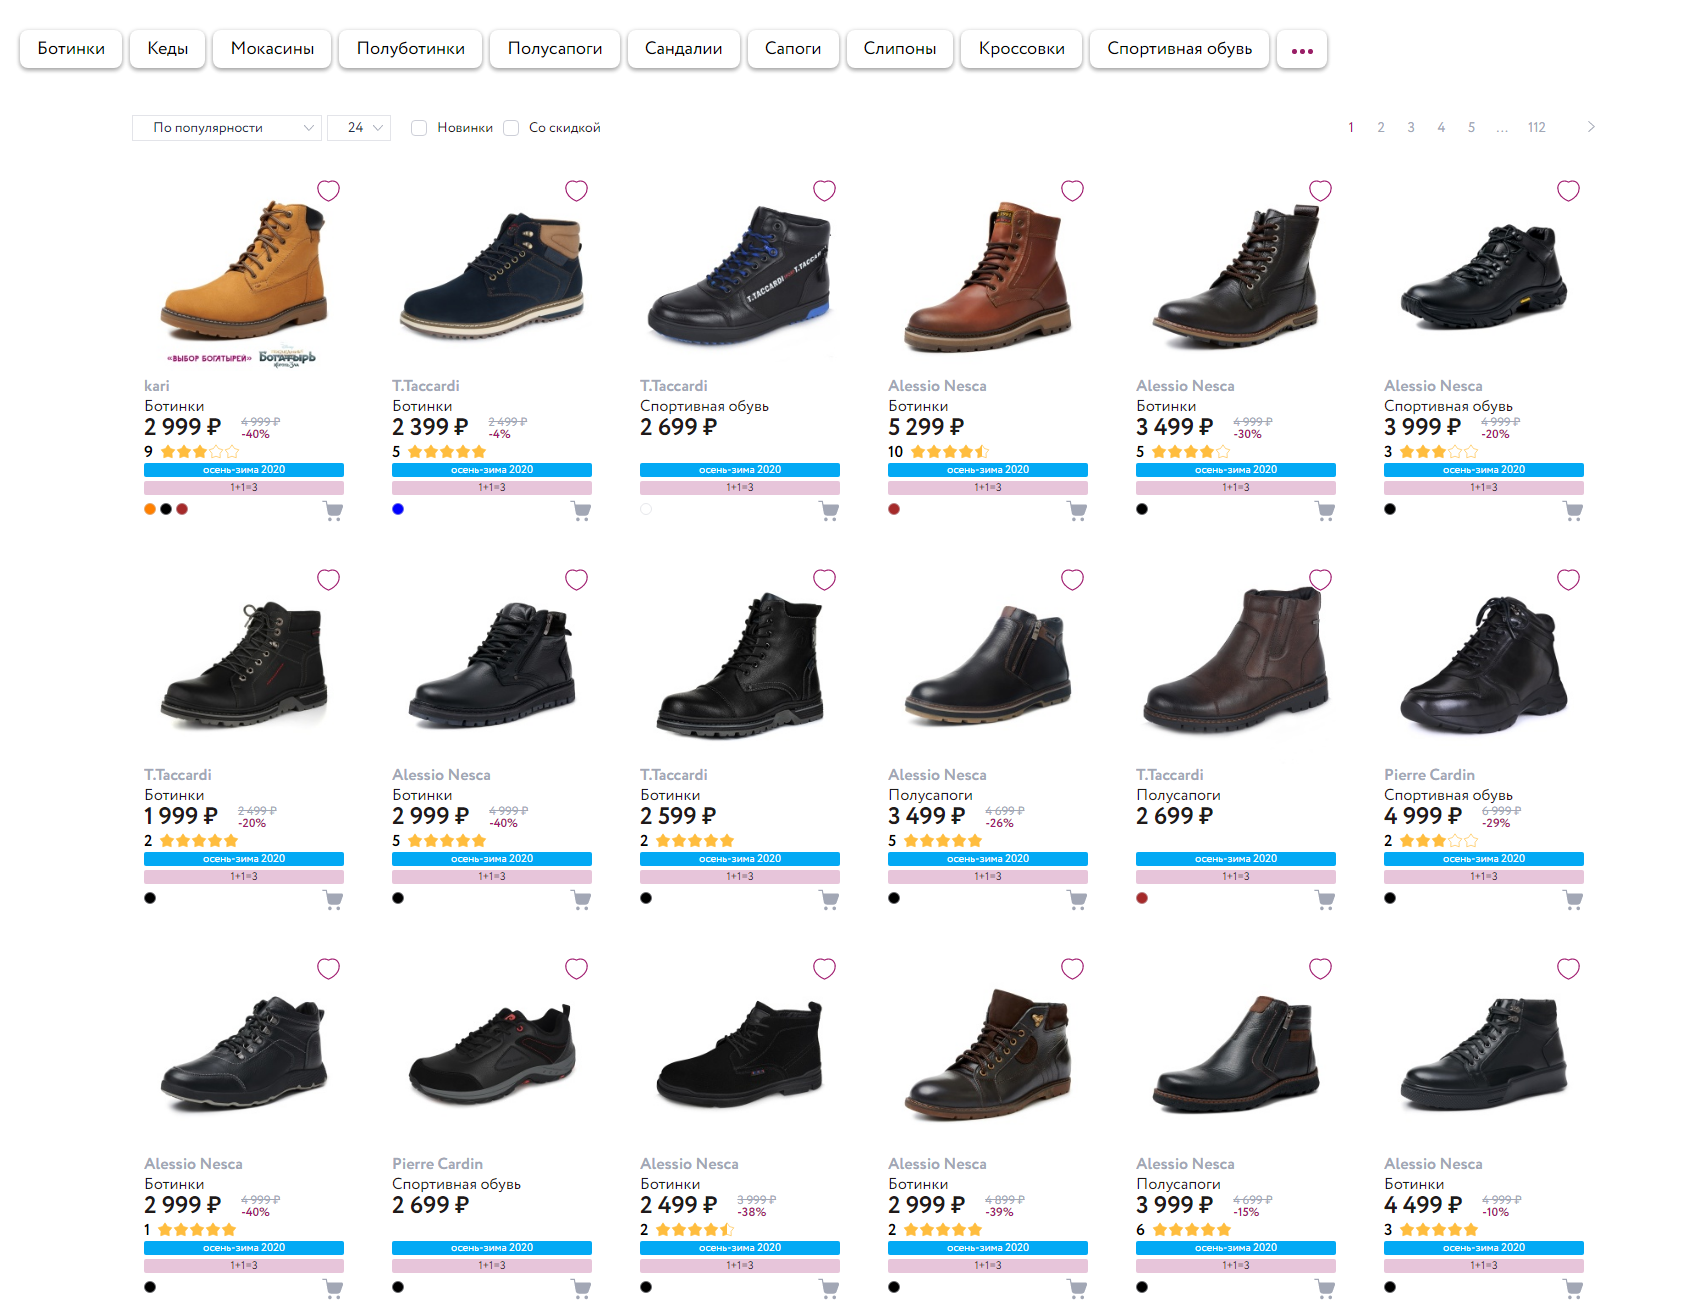 Кари обувь омск. Kari интернет-магазин обуви. Магазин кари каталог. Карри обувь. Каталог обуви.